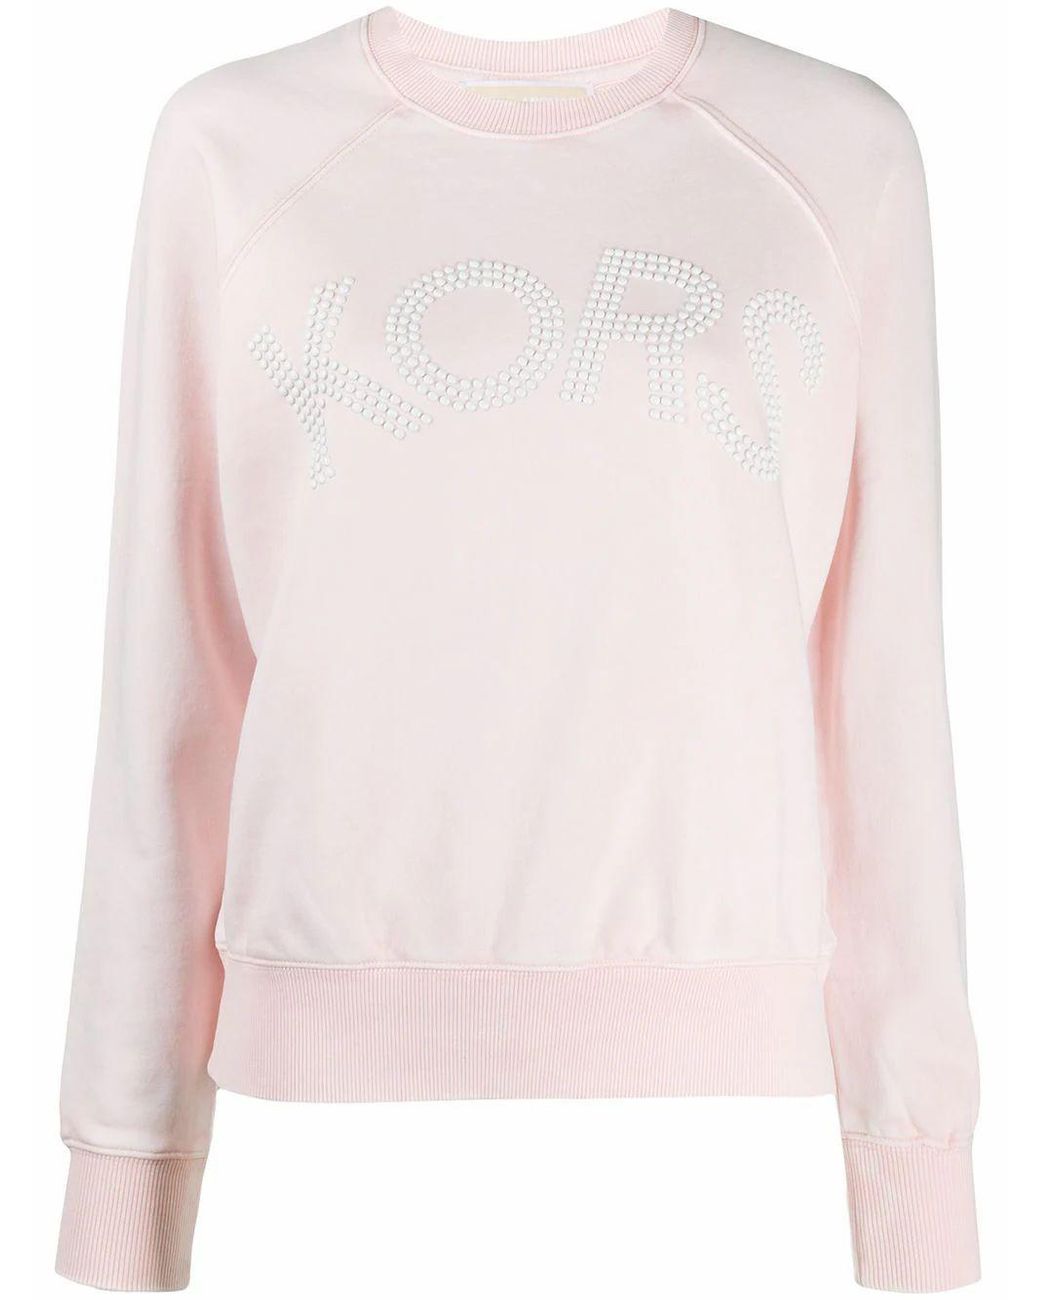 Michael Kors Cotton Sweatshirt in Pink - Lyst